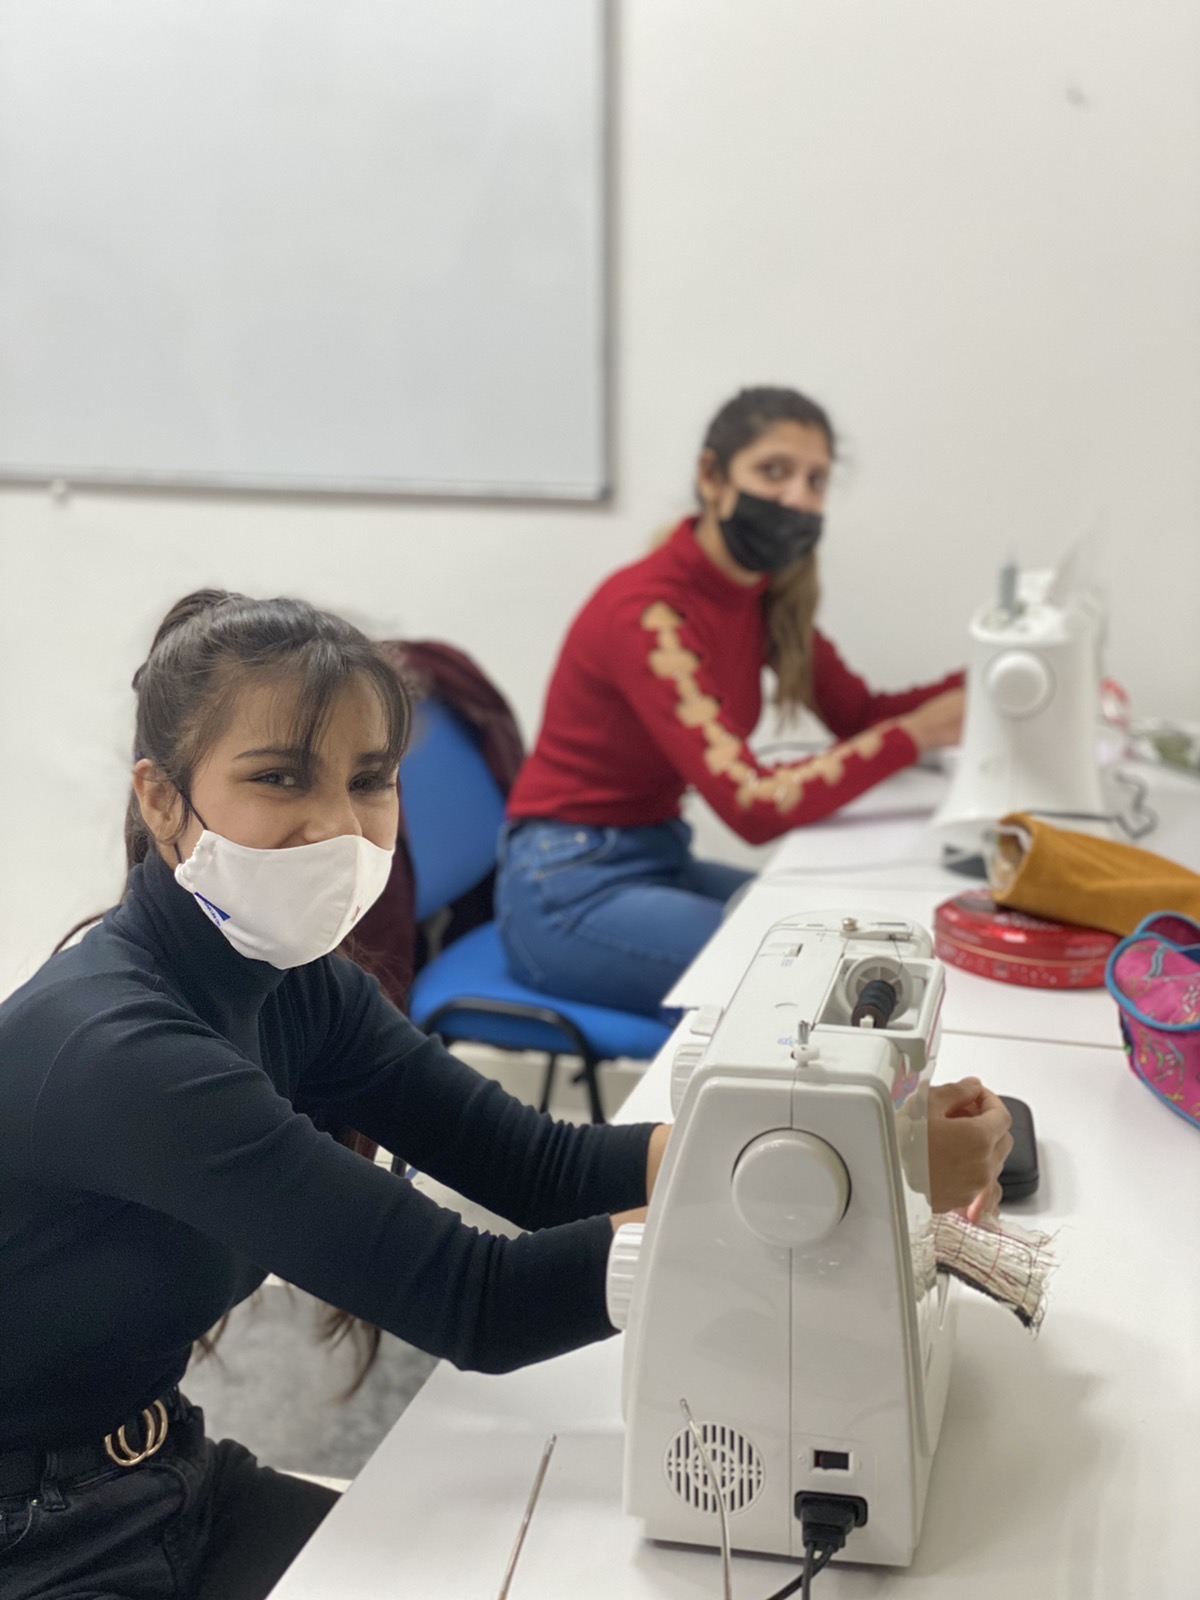 Obuka na šivaćim mašinama za pripadnice RE zajednice sa Konika: Polaznice kursa veoma zadovoljne i nadaju se većim šansama za posao